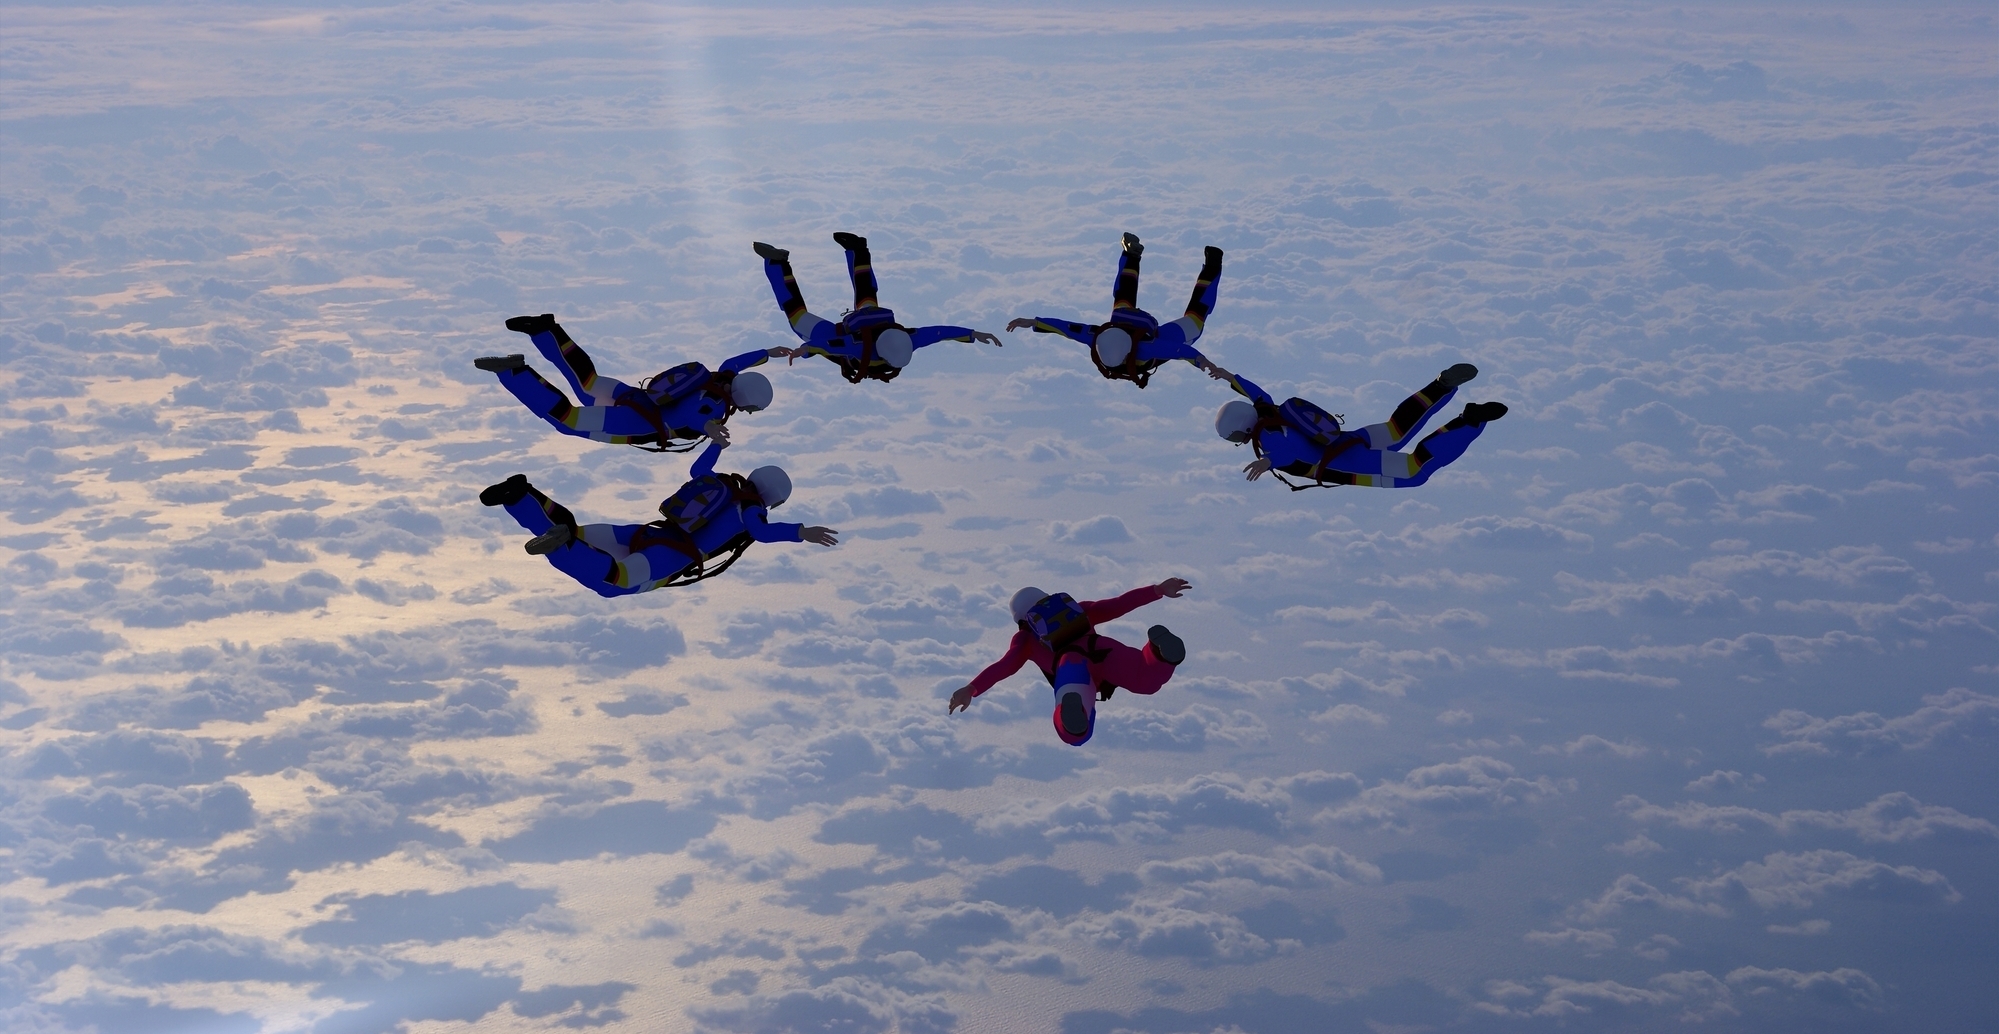 Skydiving team